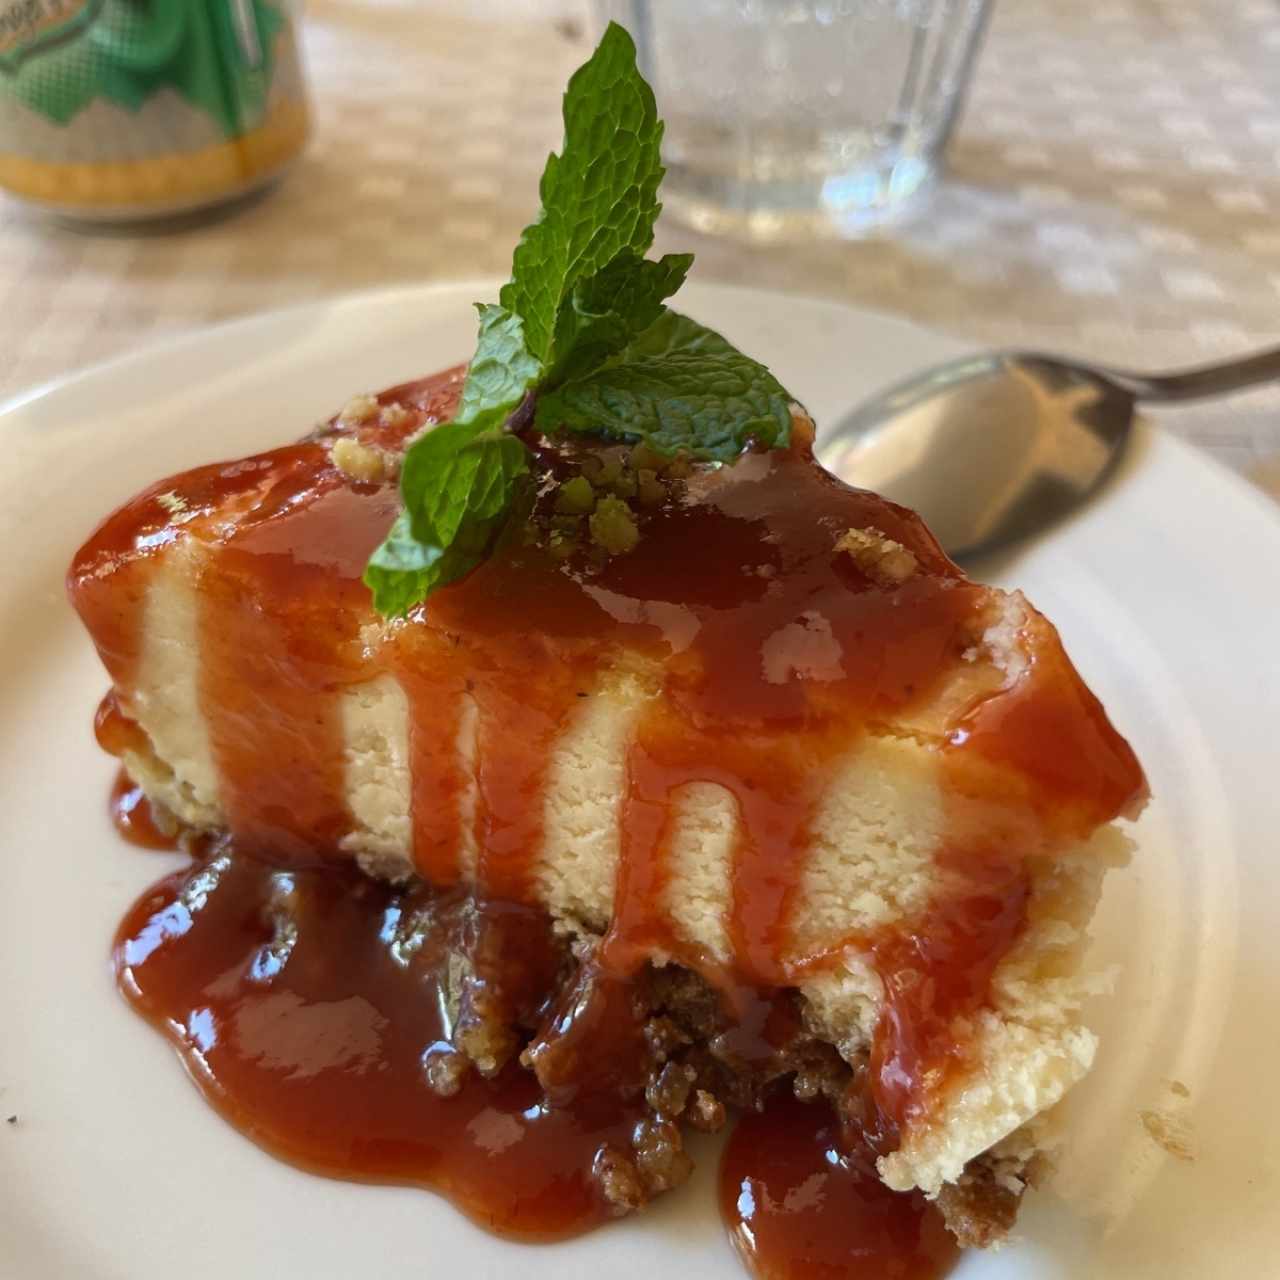 Cheesecake con costra de pepita y salsa de guayaba